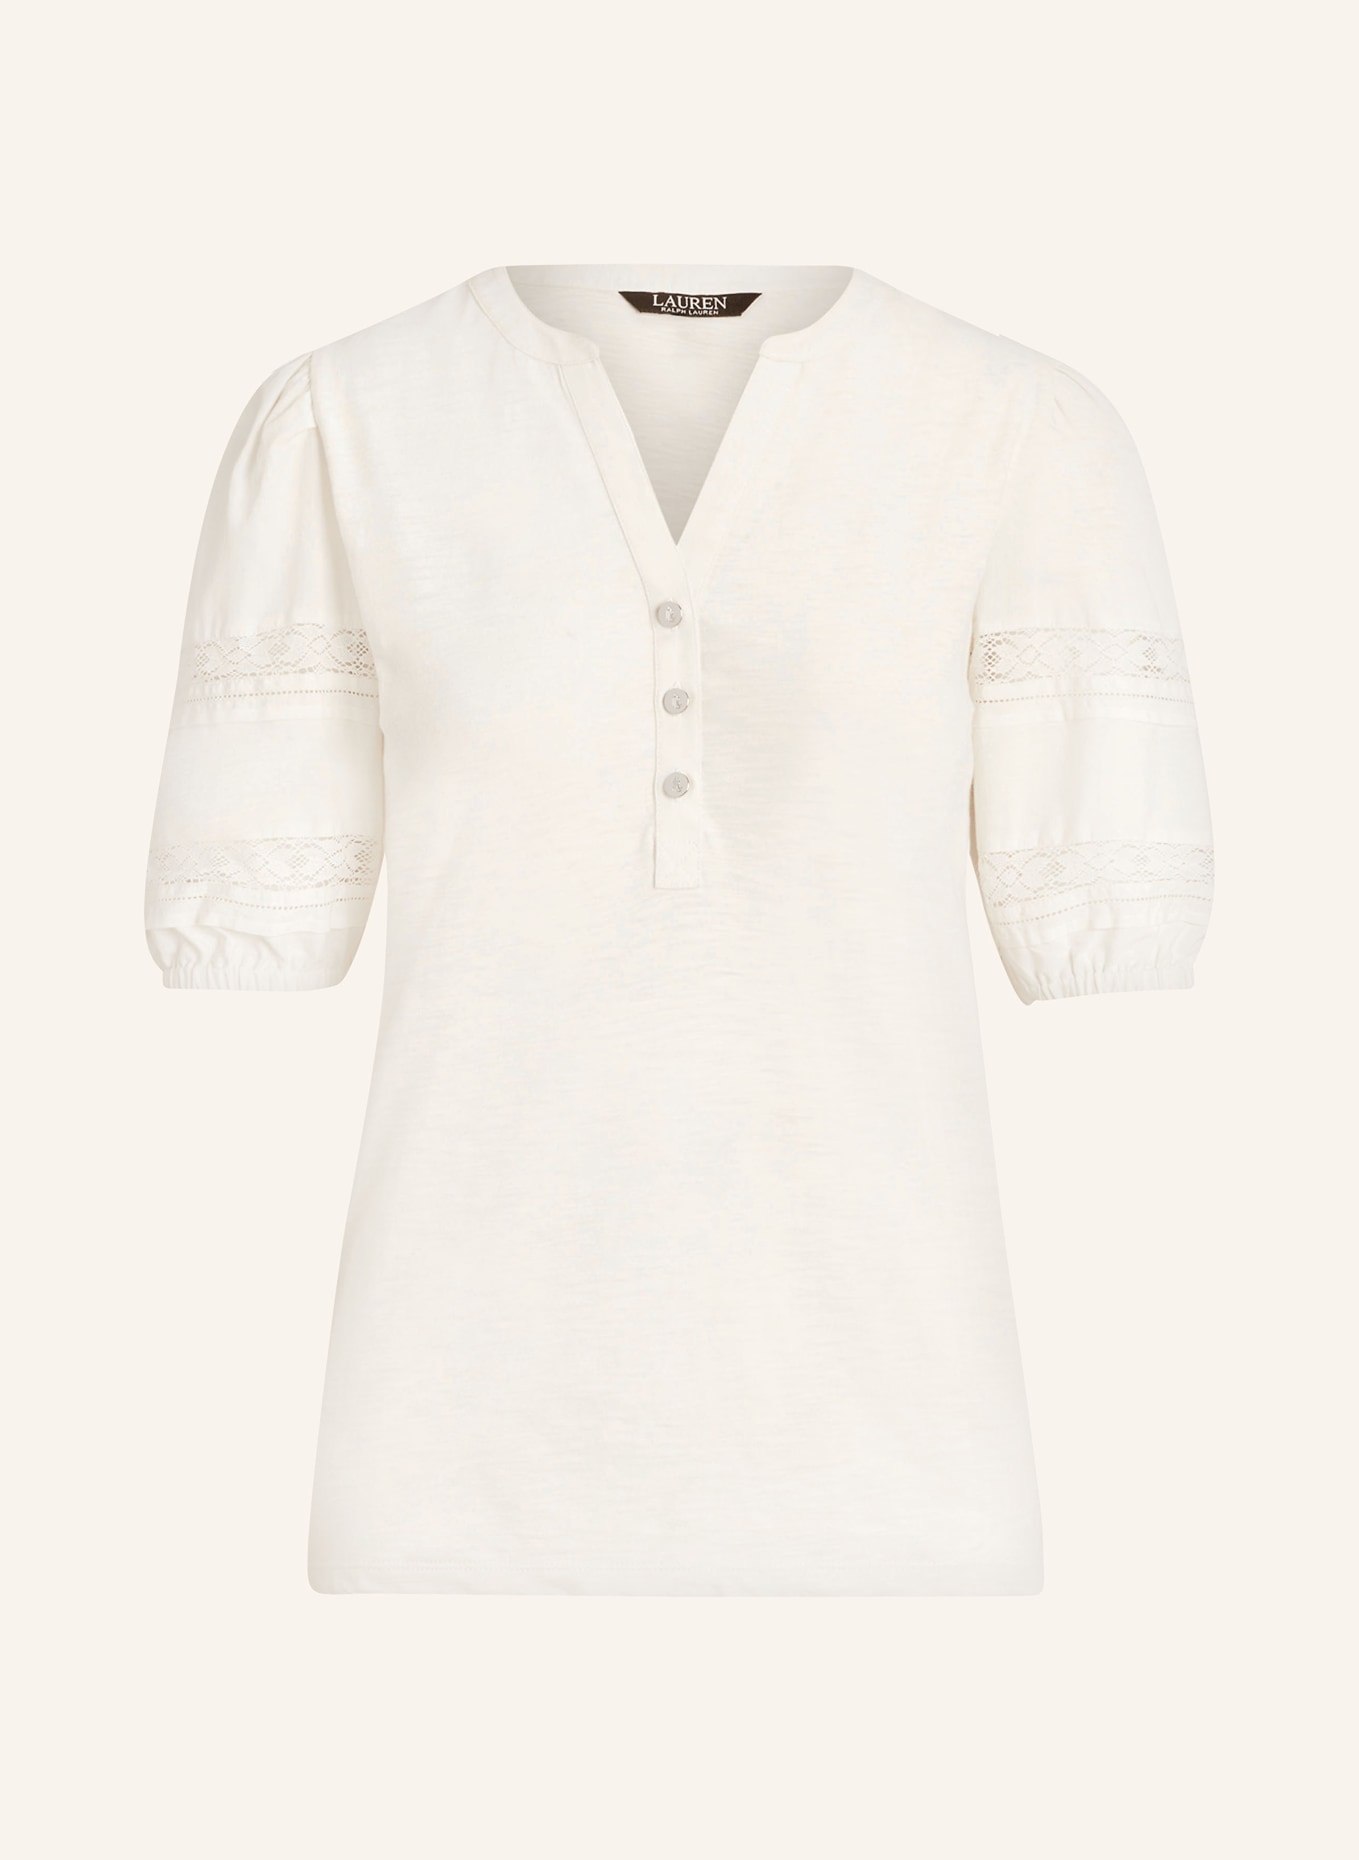 LAUREN RALPH LAUREN Shirt blouse in mixed materials, Color: CREAM (Image 1)